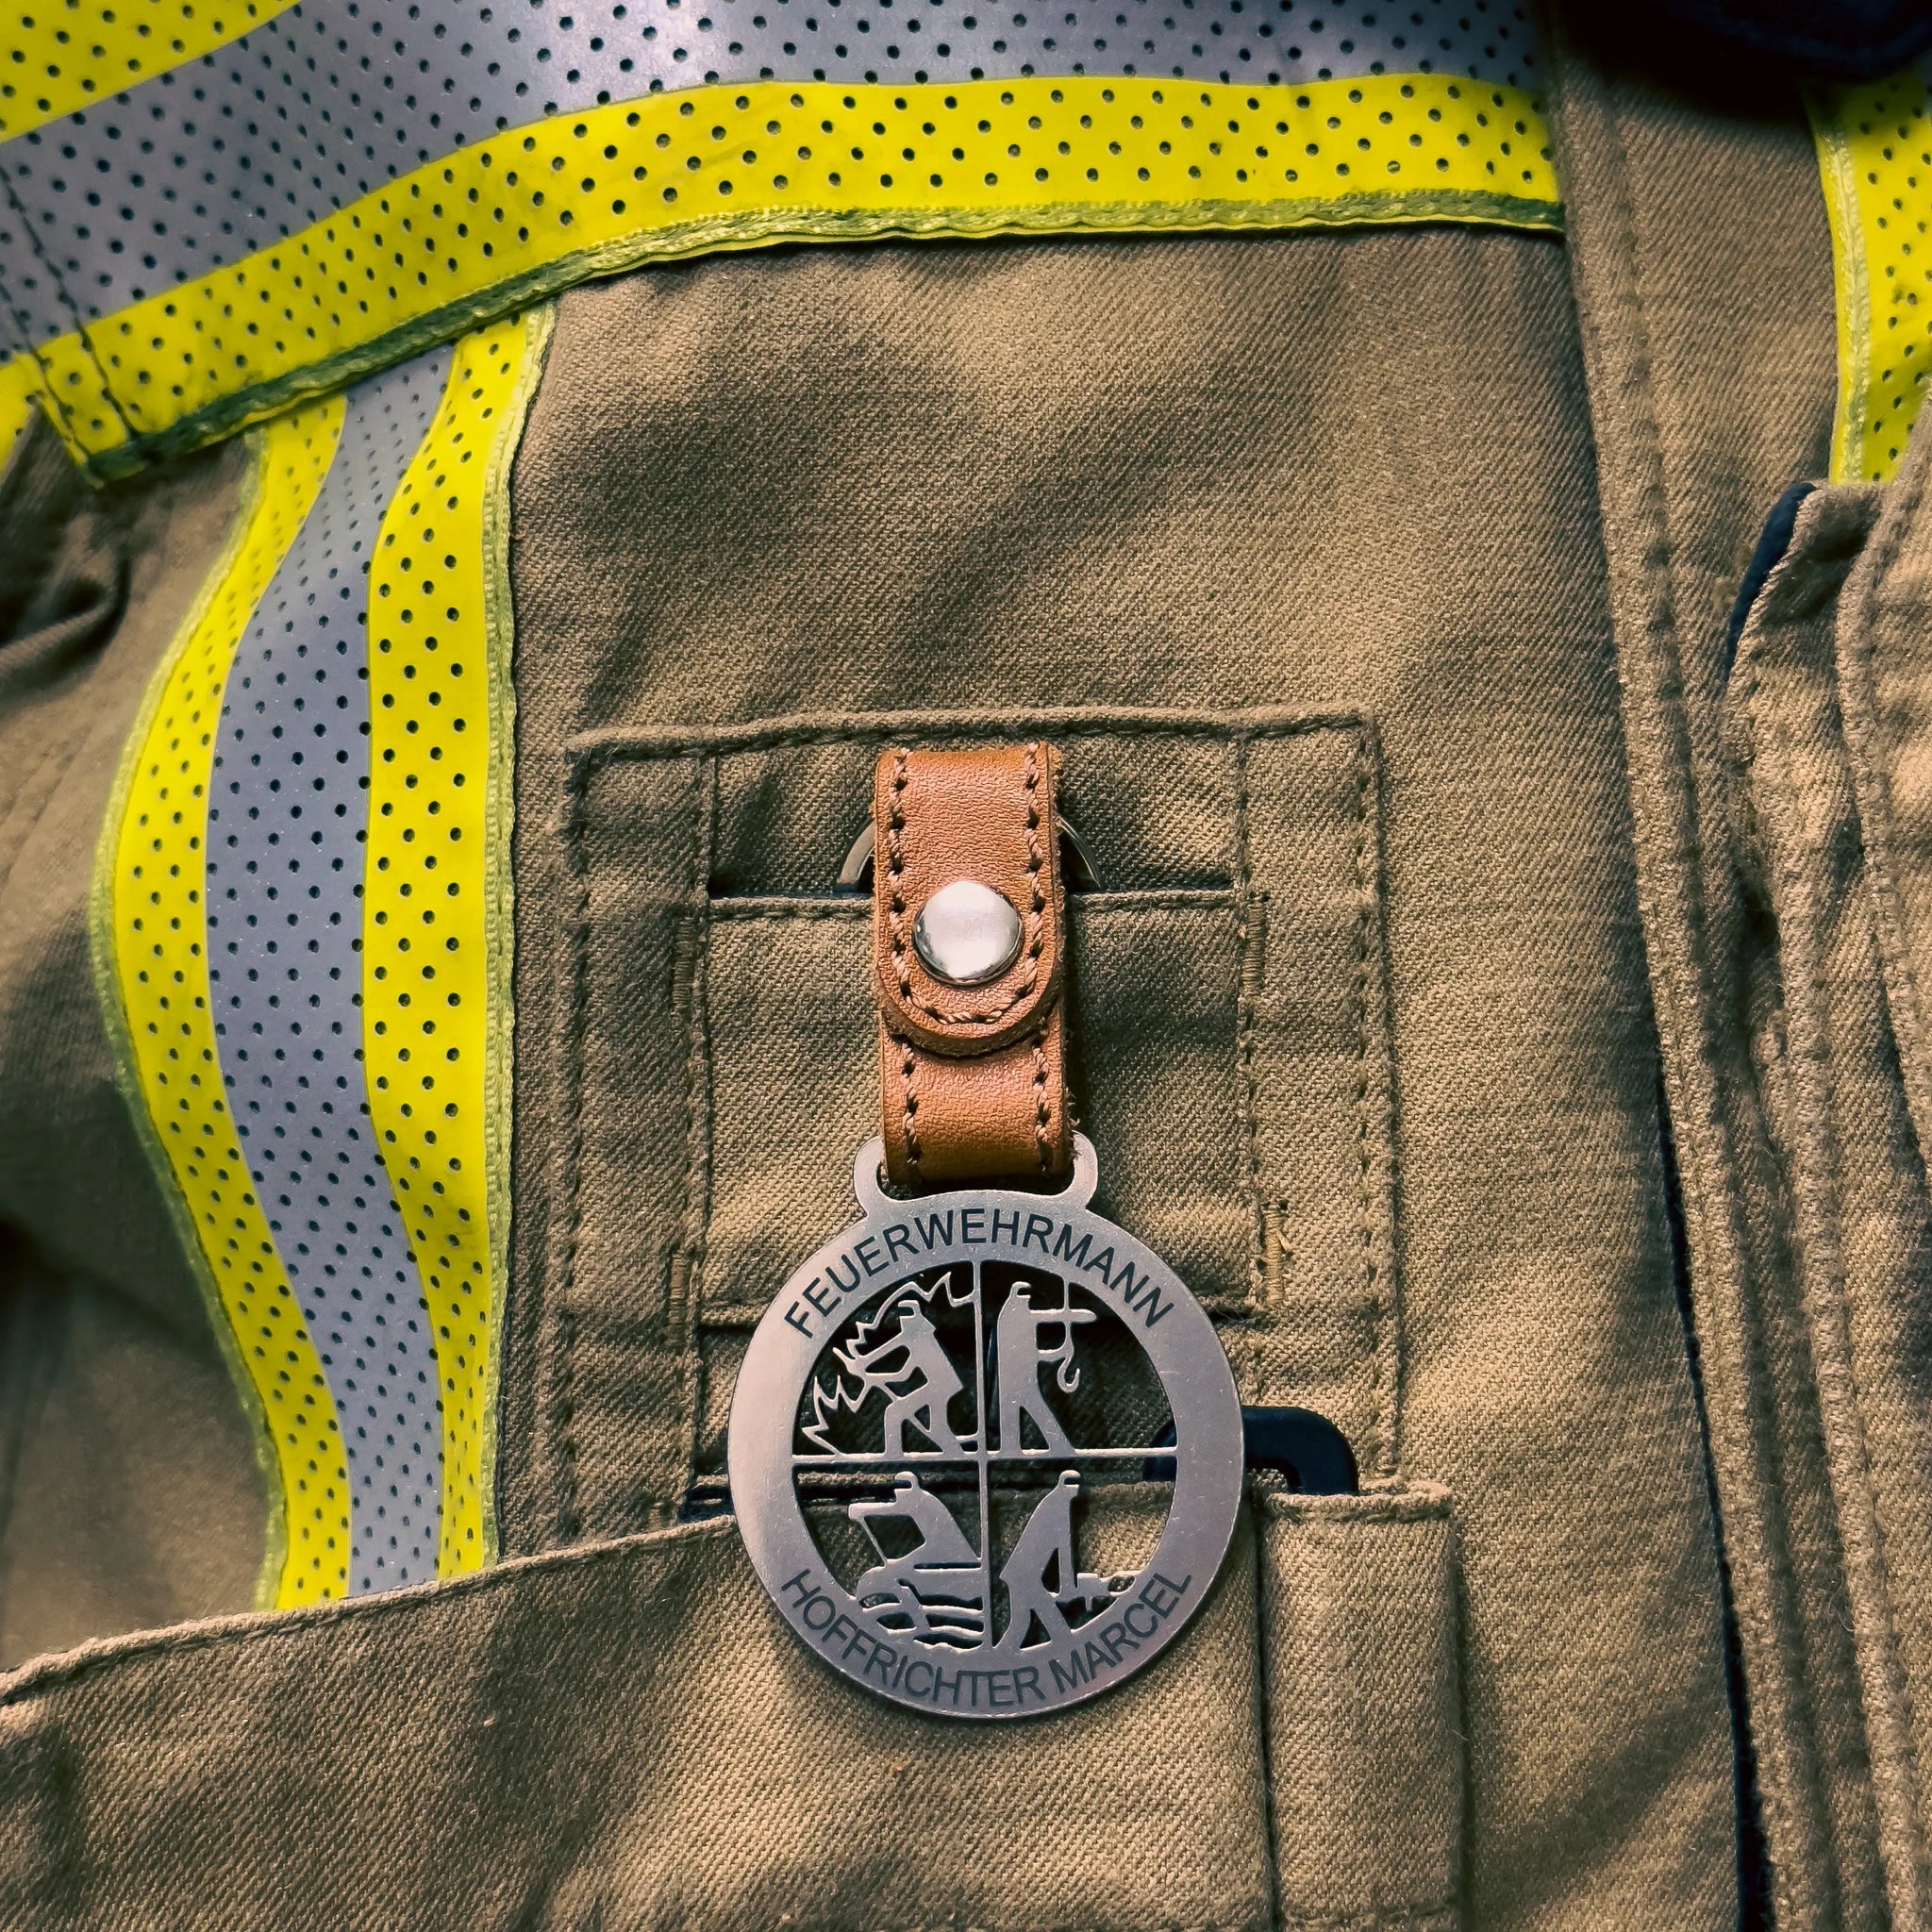 Schlüsselanhänger - Feuerwehrmann (Ni/SH) - Ideal auch als Geschenk, Online Shop